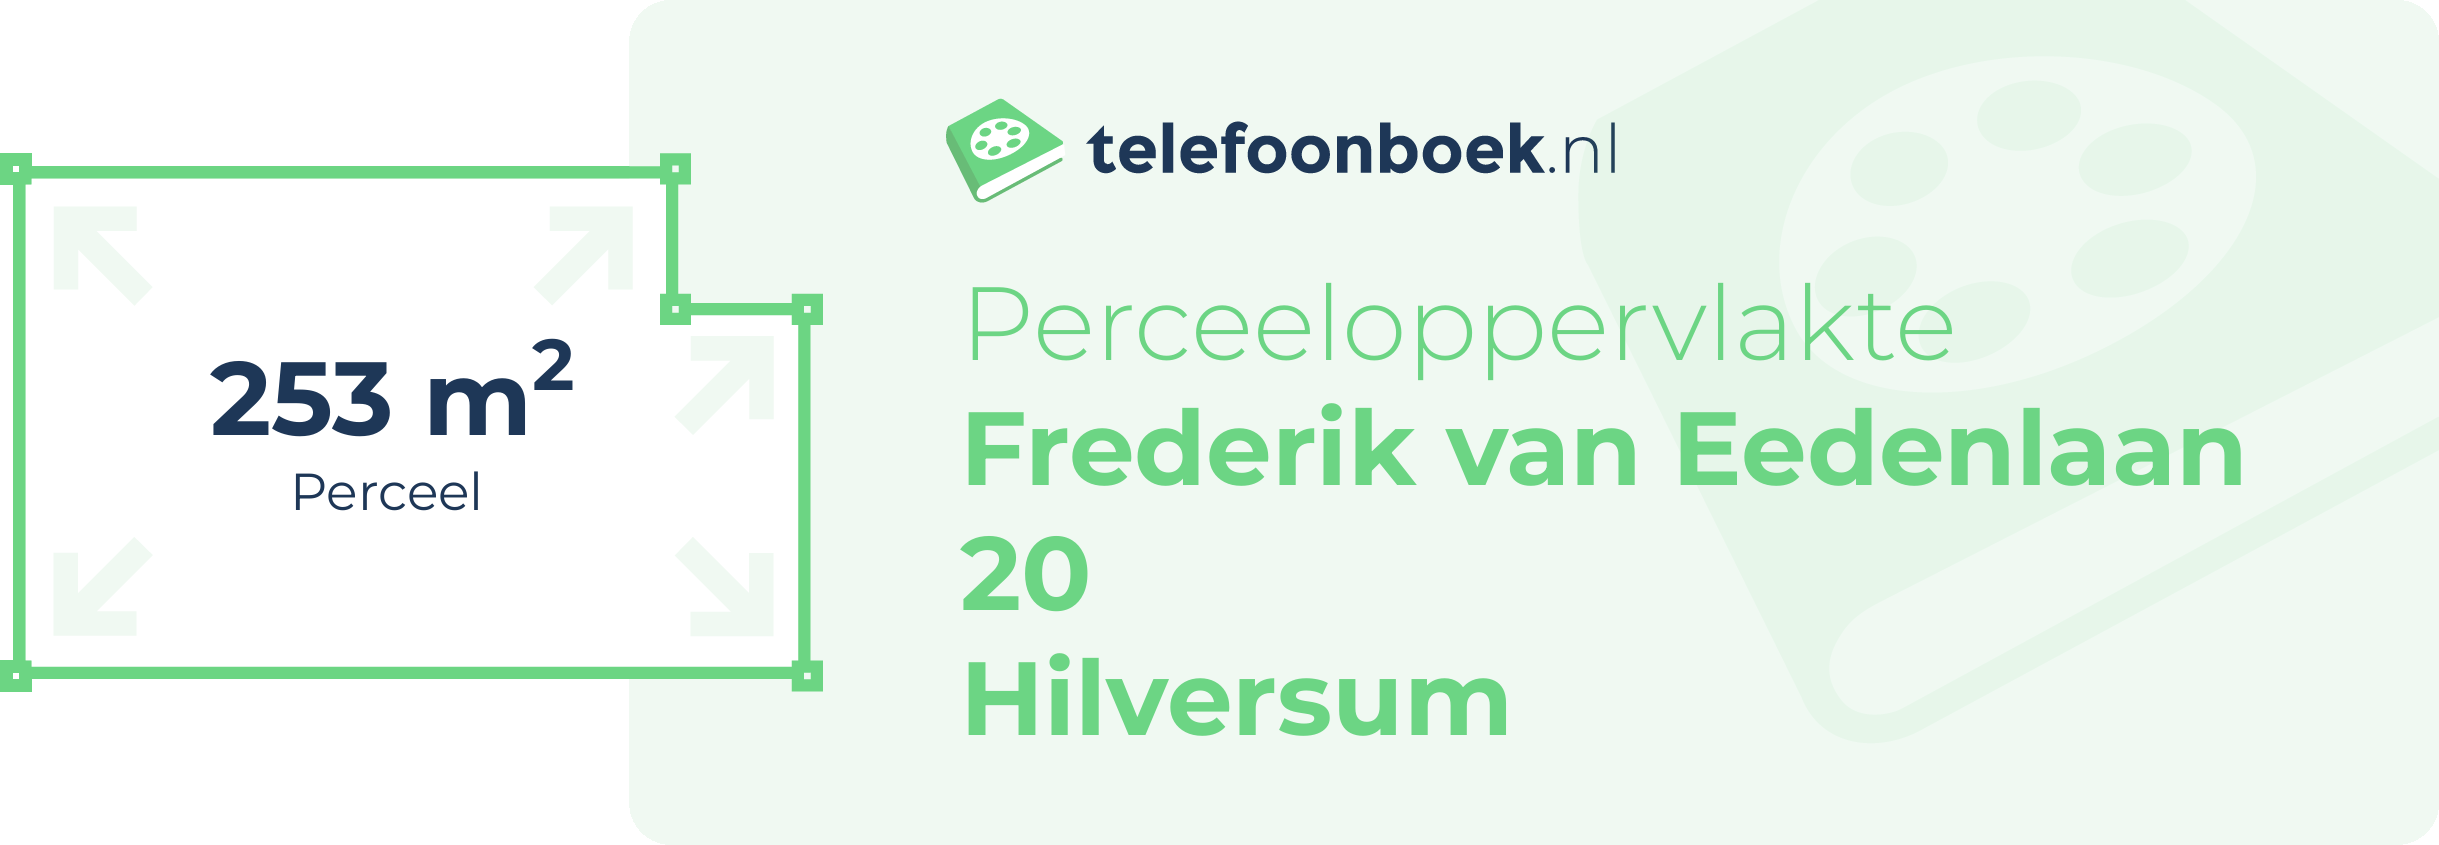 Perceeloppervlakte Frederik Van Eedenlaan 20 Hilversum